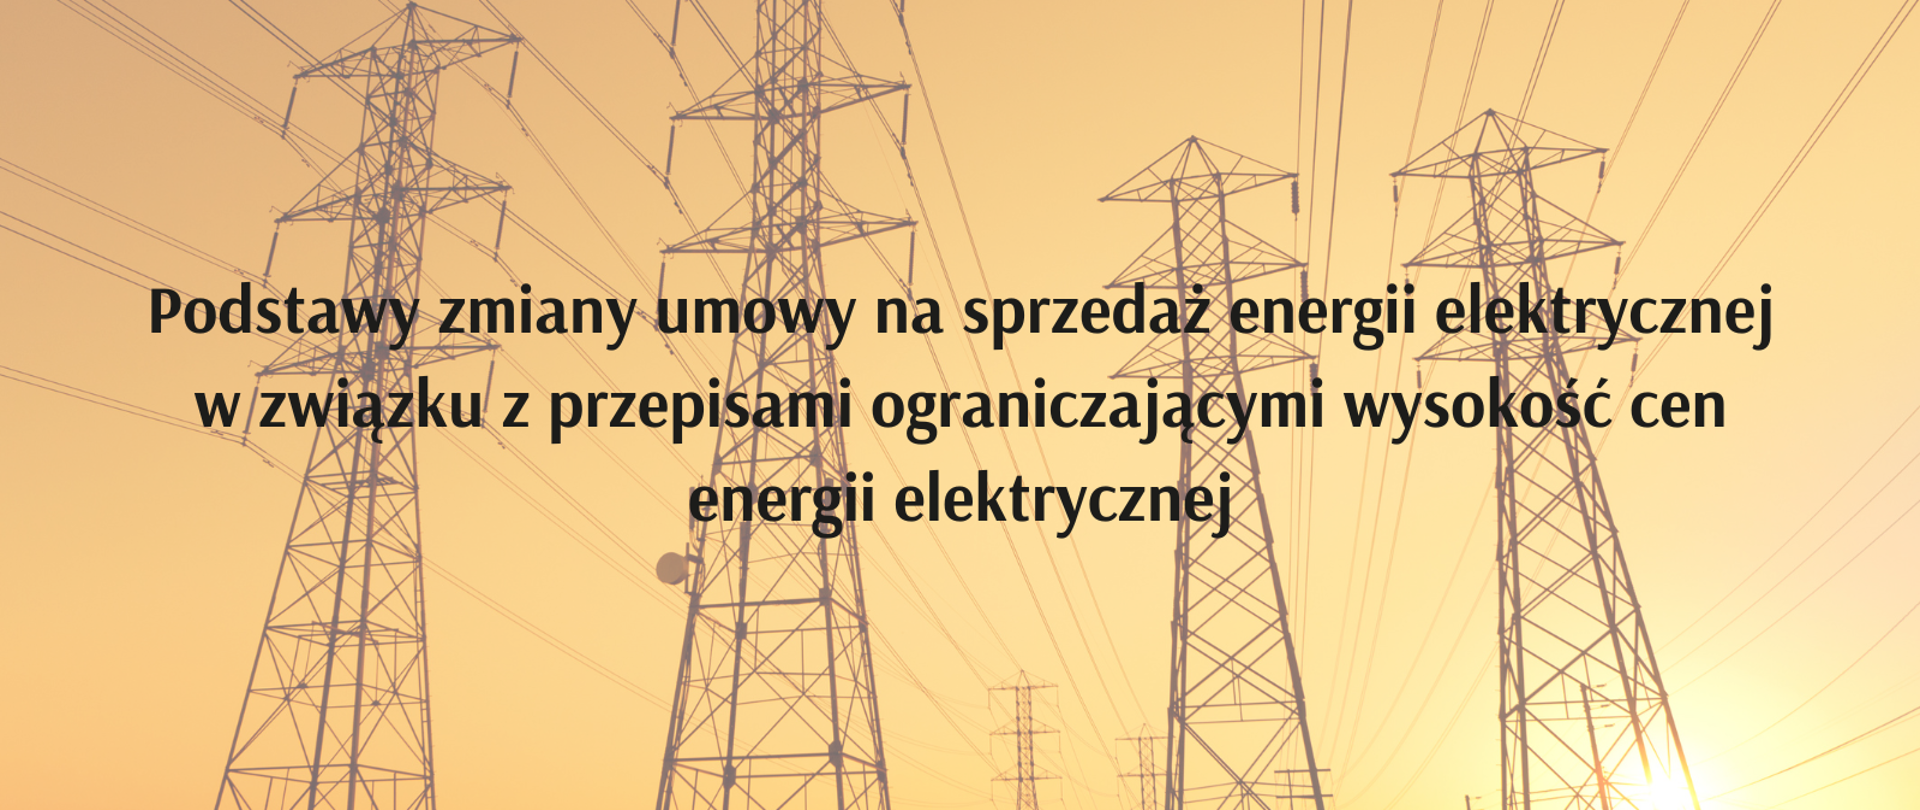 Podstawy zmiany umowy na sprzedaż energii elektrycznej w związku z przepisami ograniczającymi wysokość cen energii elektrycznej